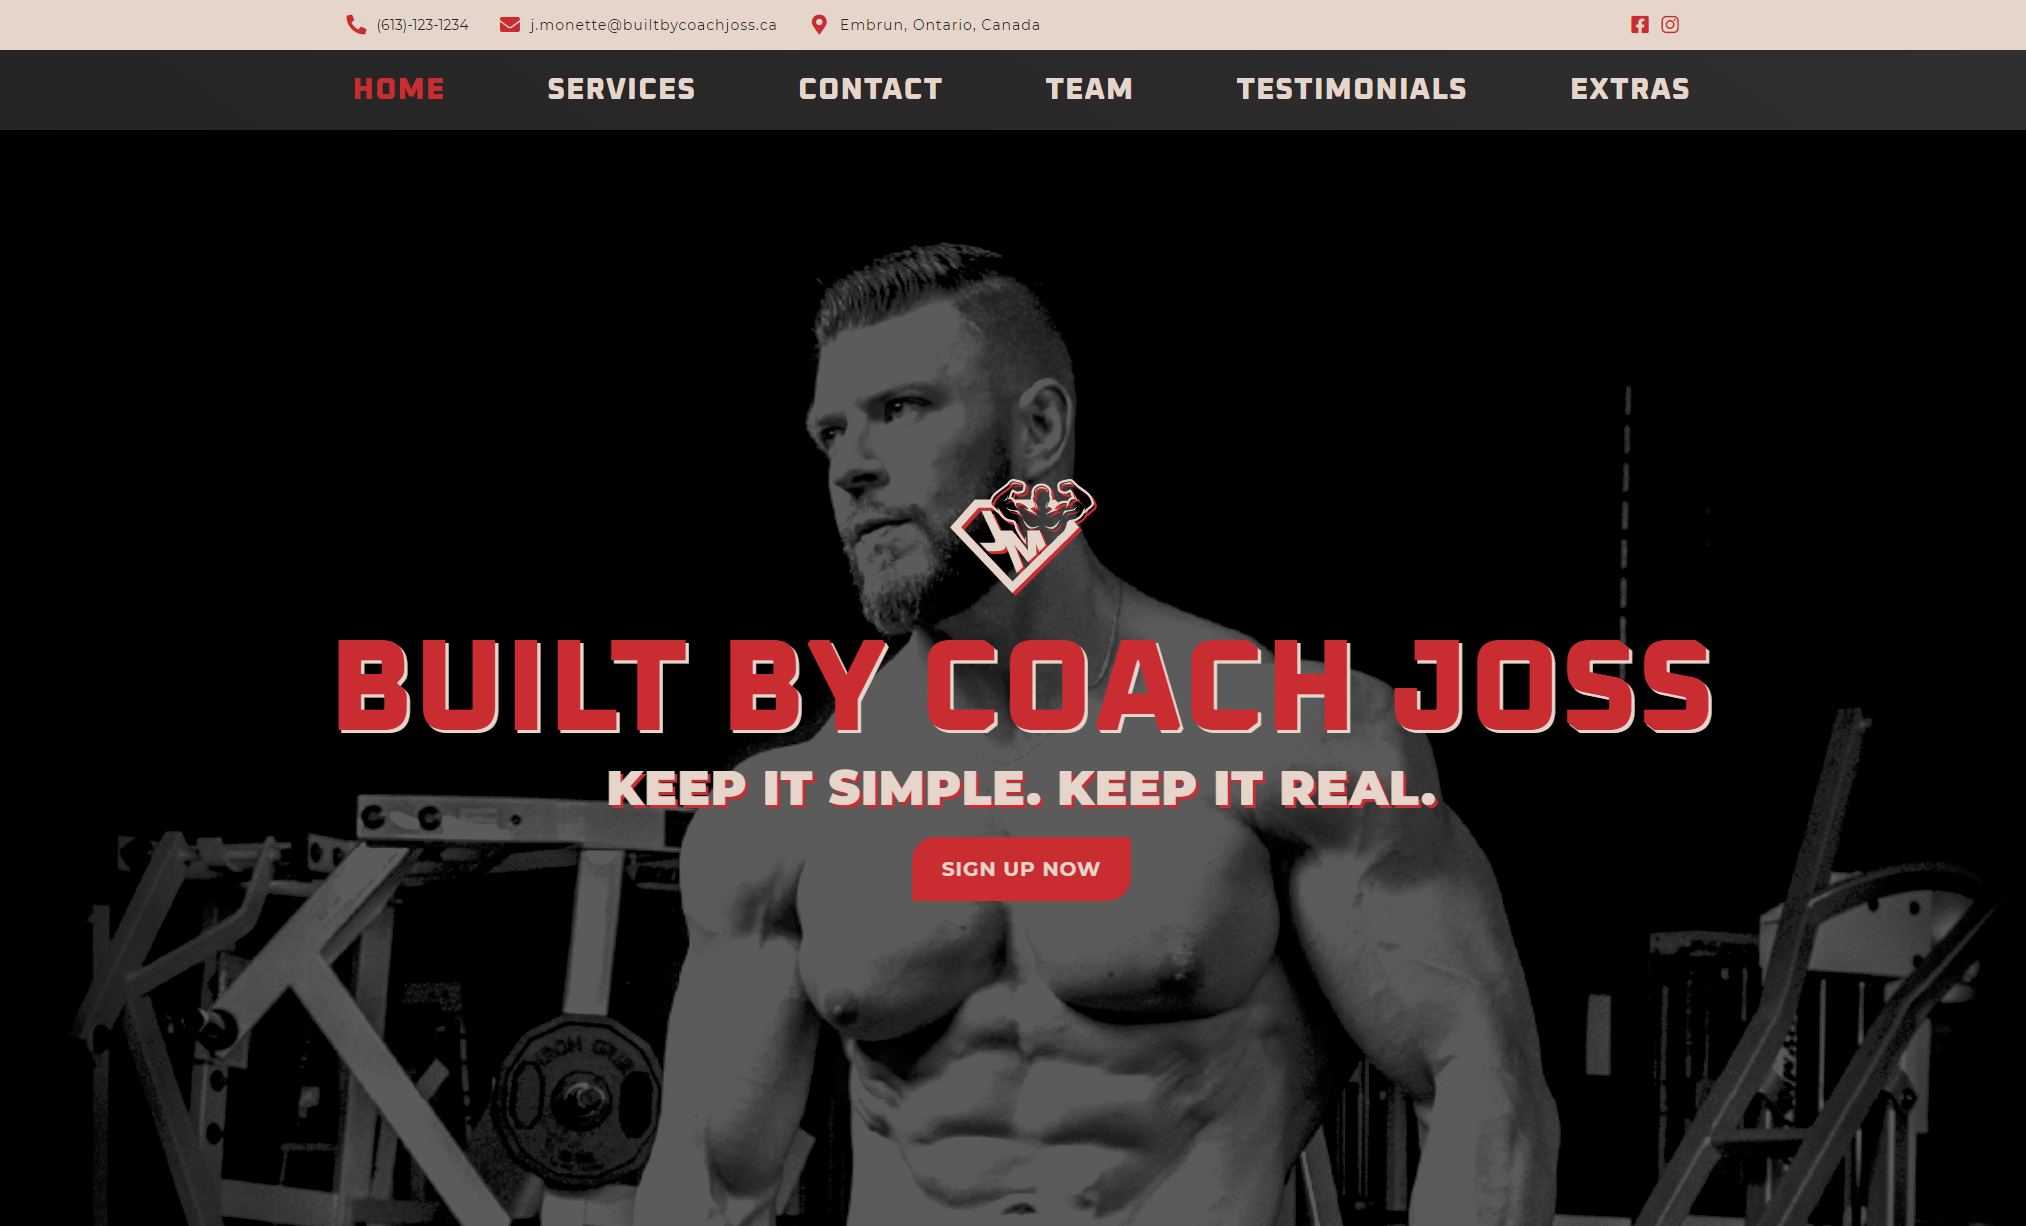 Built by coach joss website